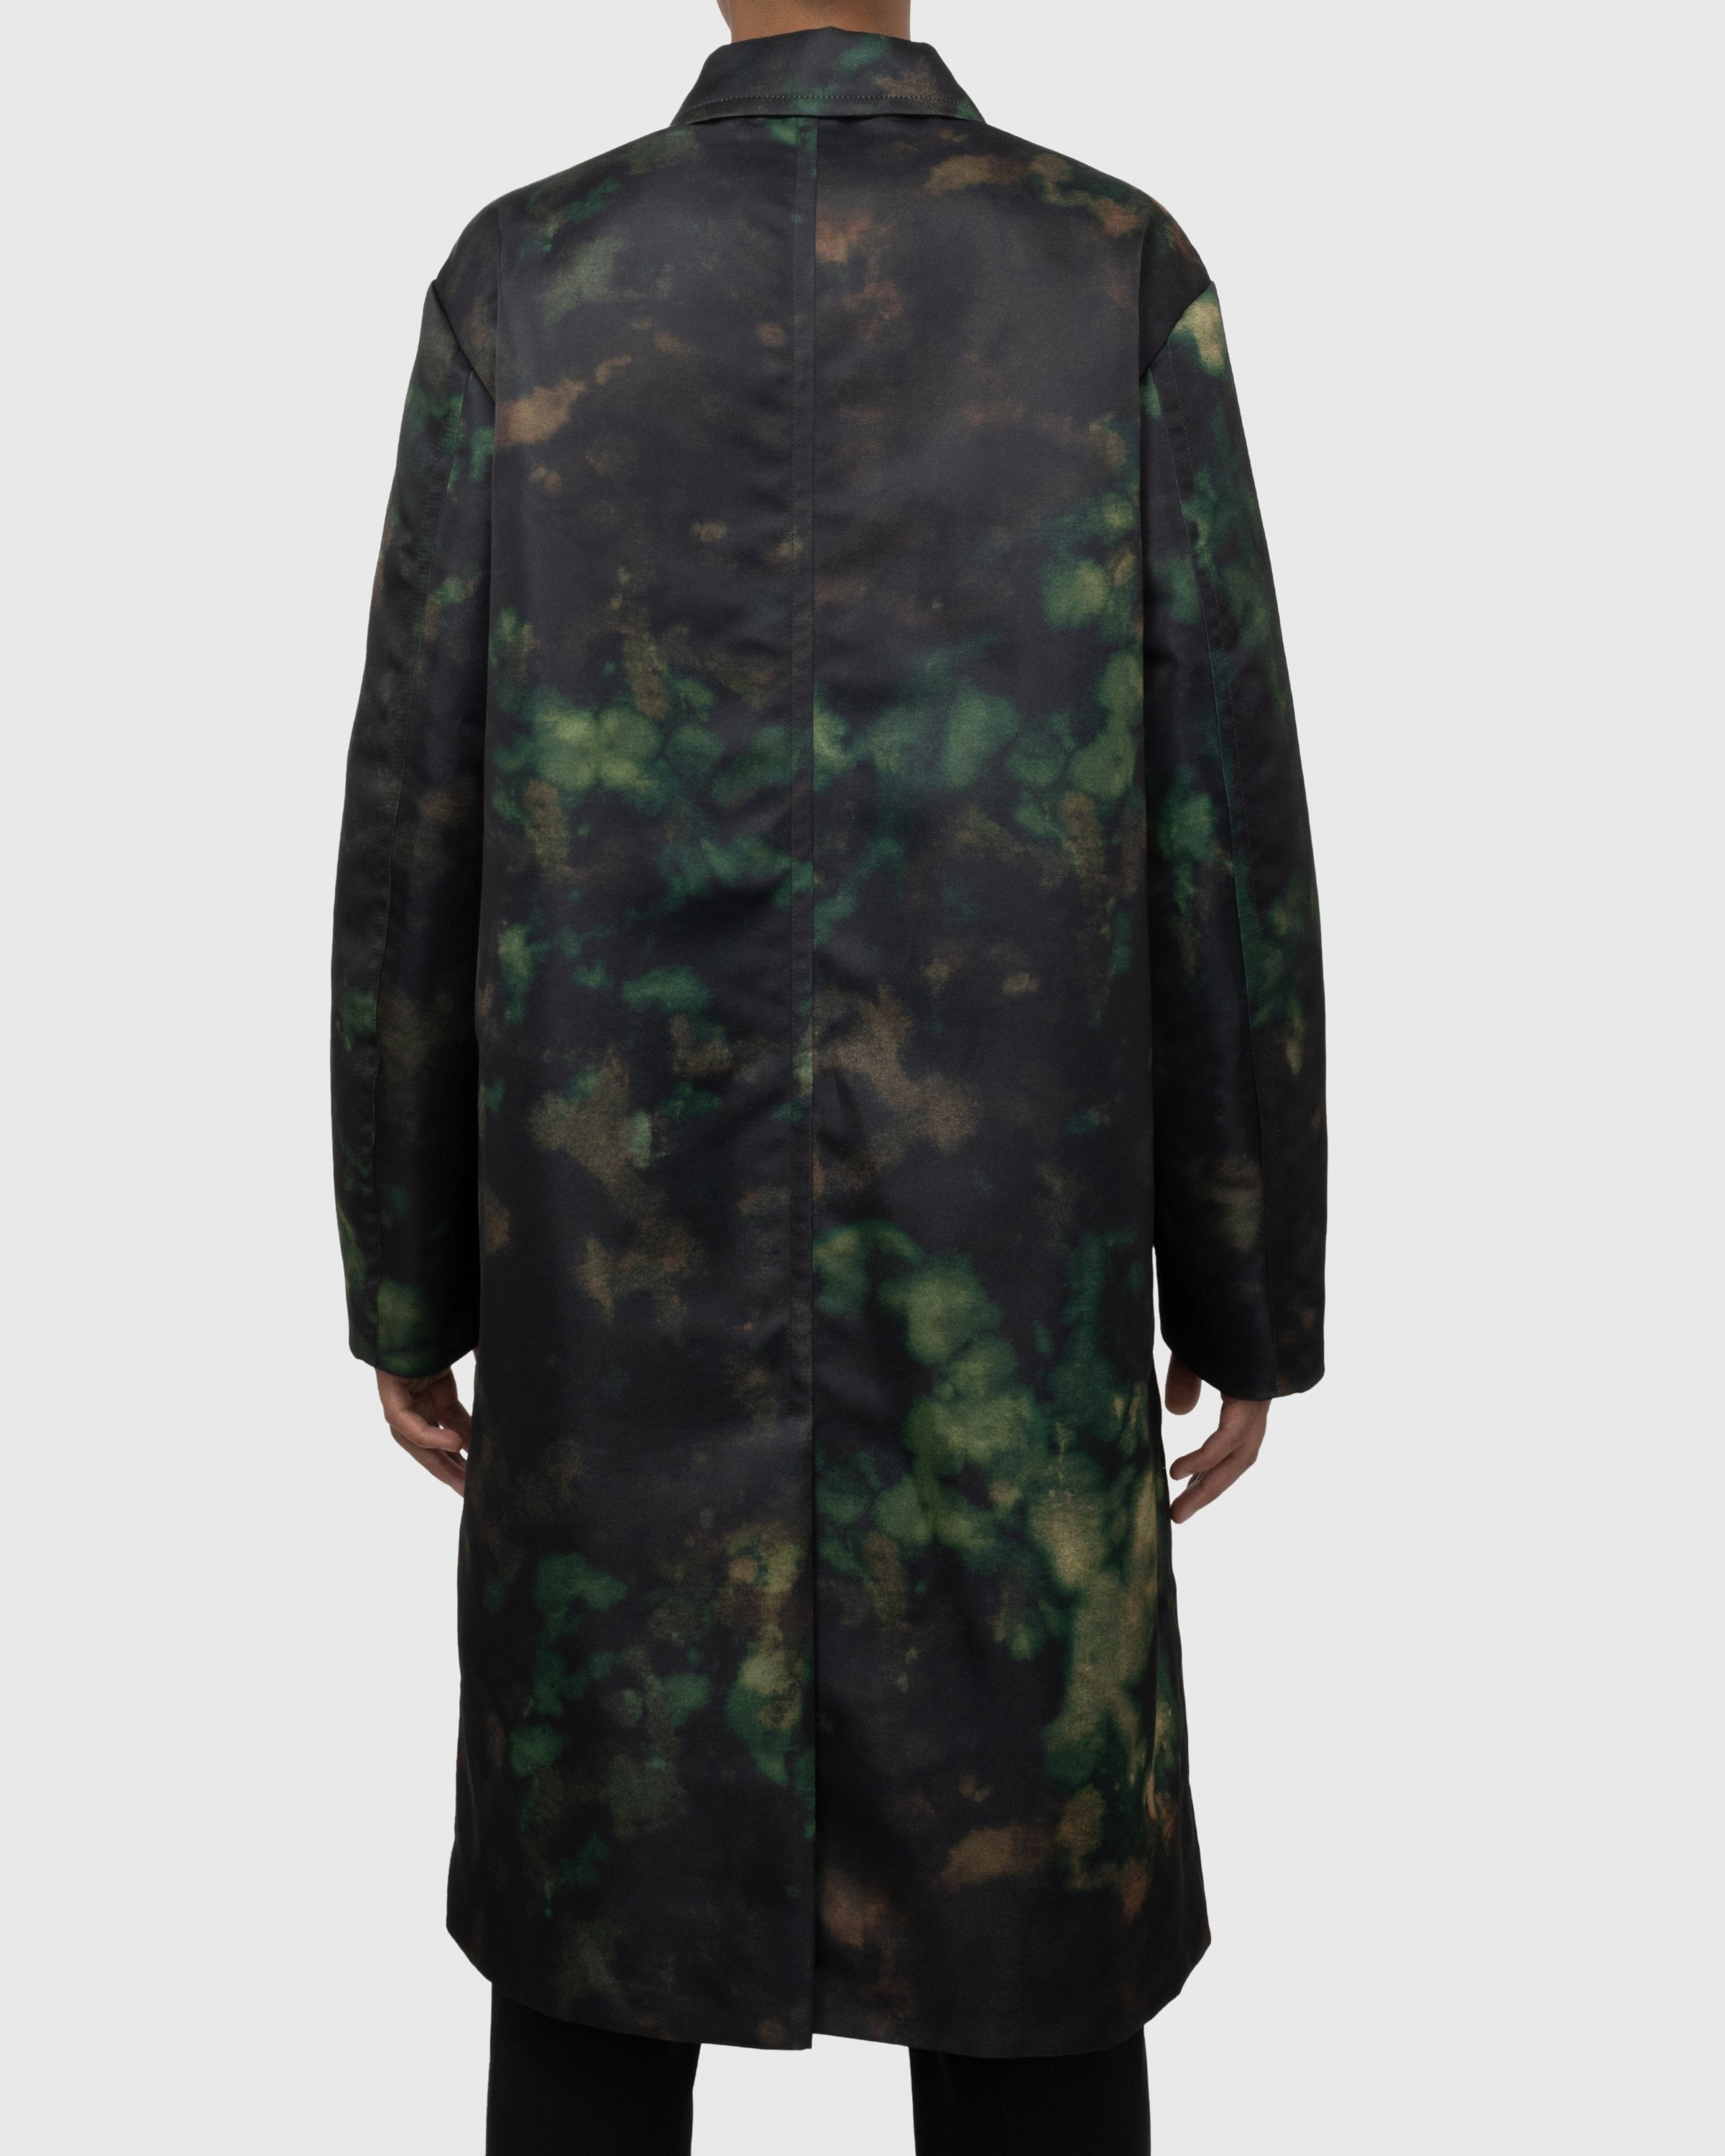 Dries van Noten – Redmore Coat Green - Trench Coats - Green - Image 4